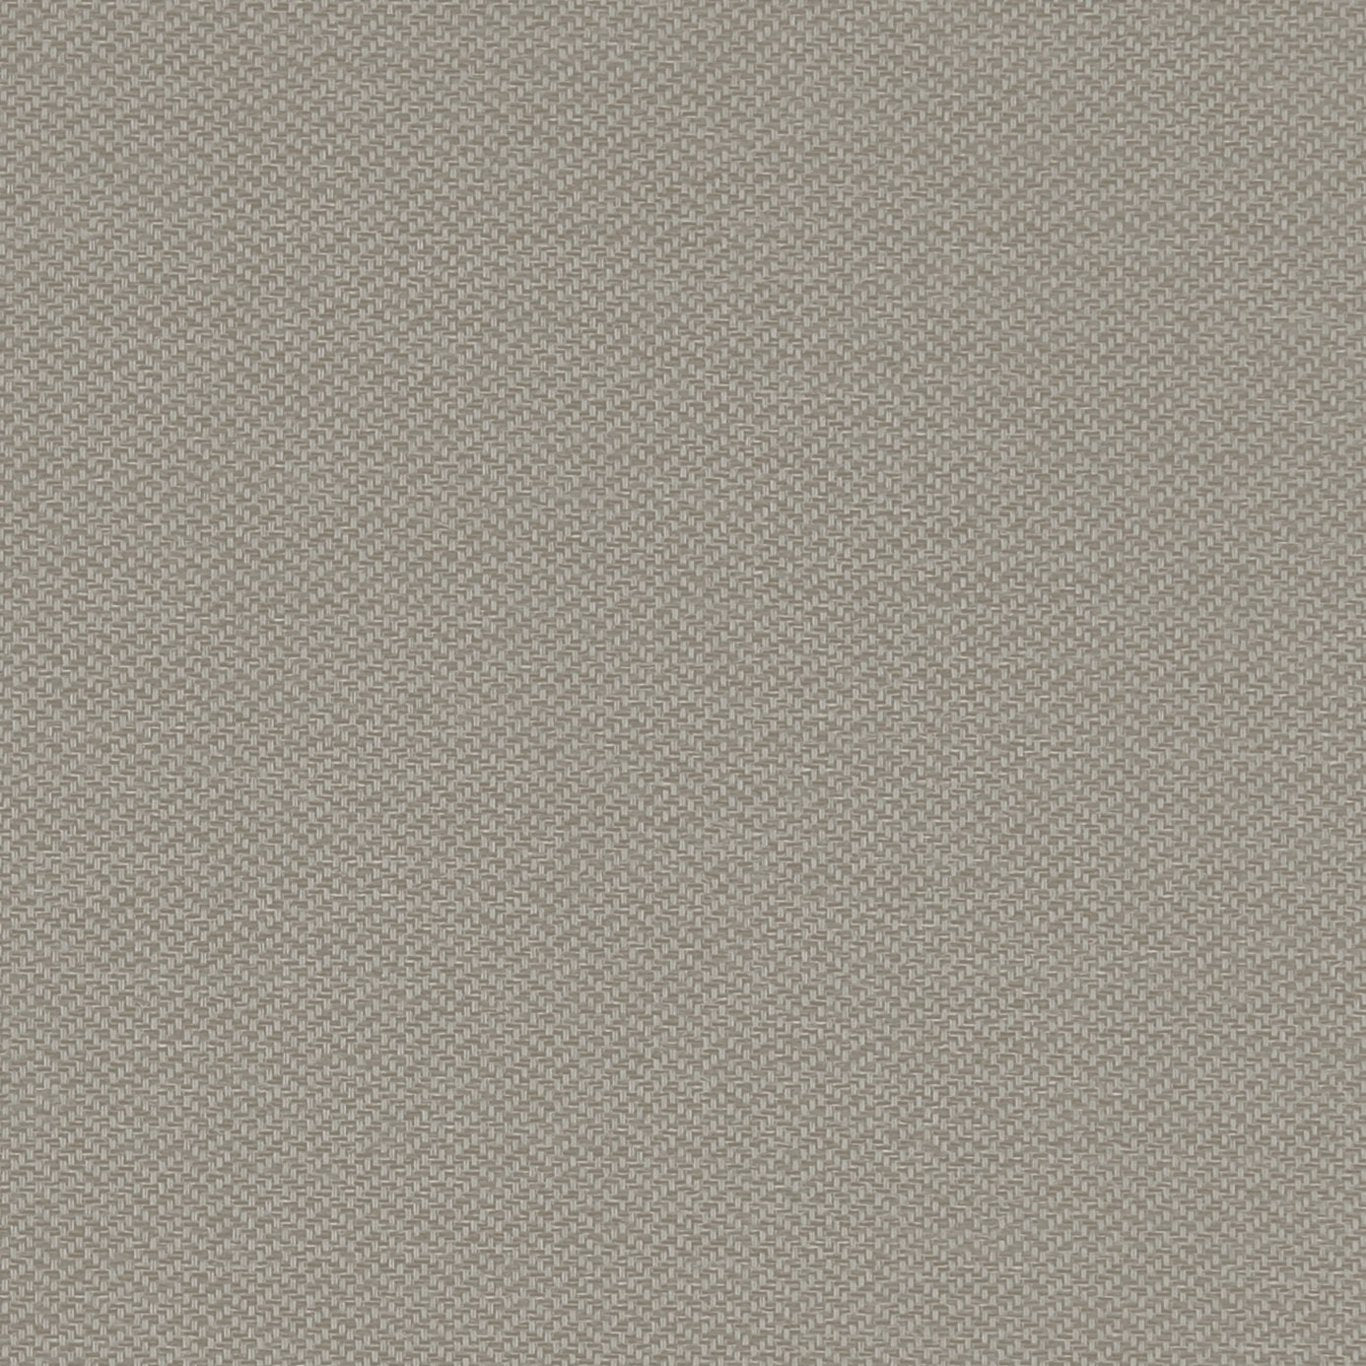 Claro Fabric by Clarke & Clarke - F1417/03 - Linen